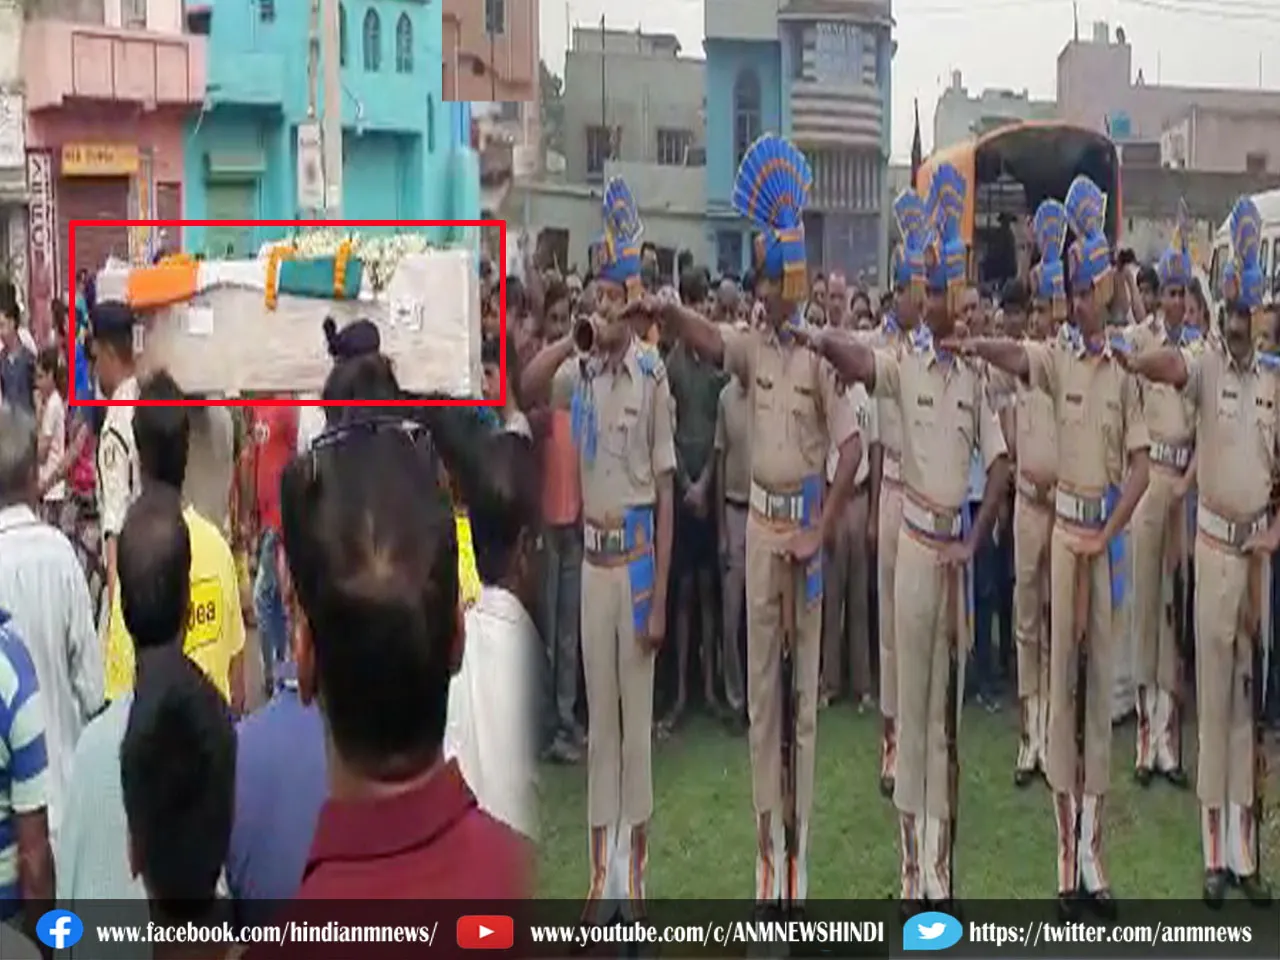 Asansol News : सिपाही को अंडाल ने नम आँखों से दी अंतिम विदाई ( देखिए वीडियो )